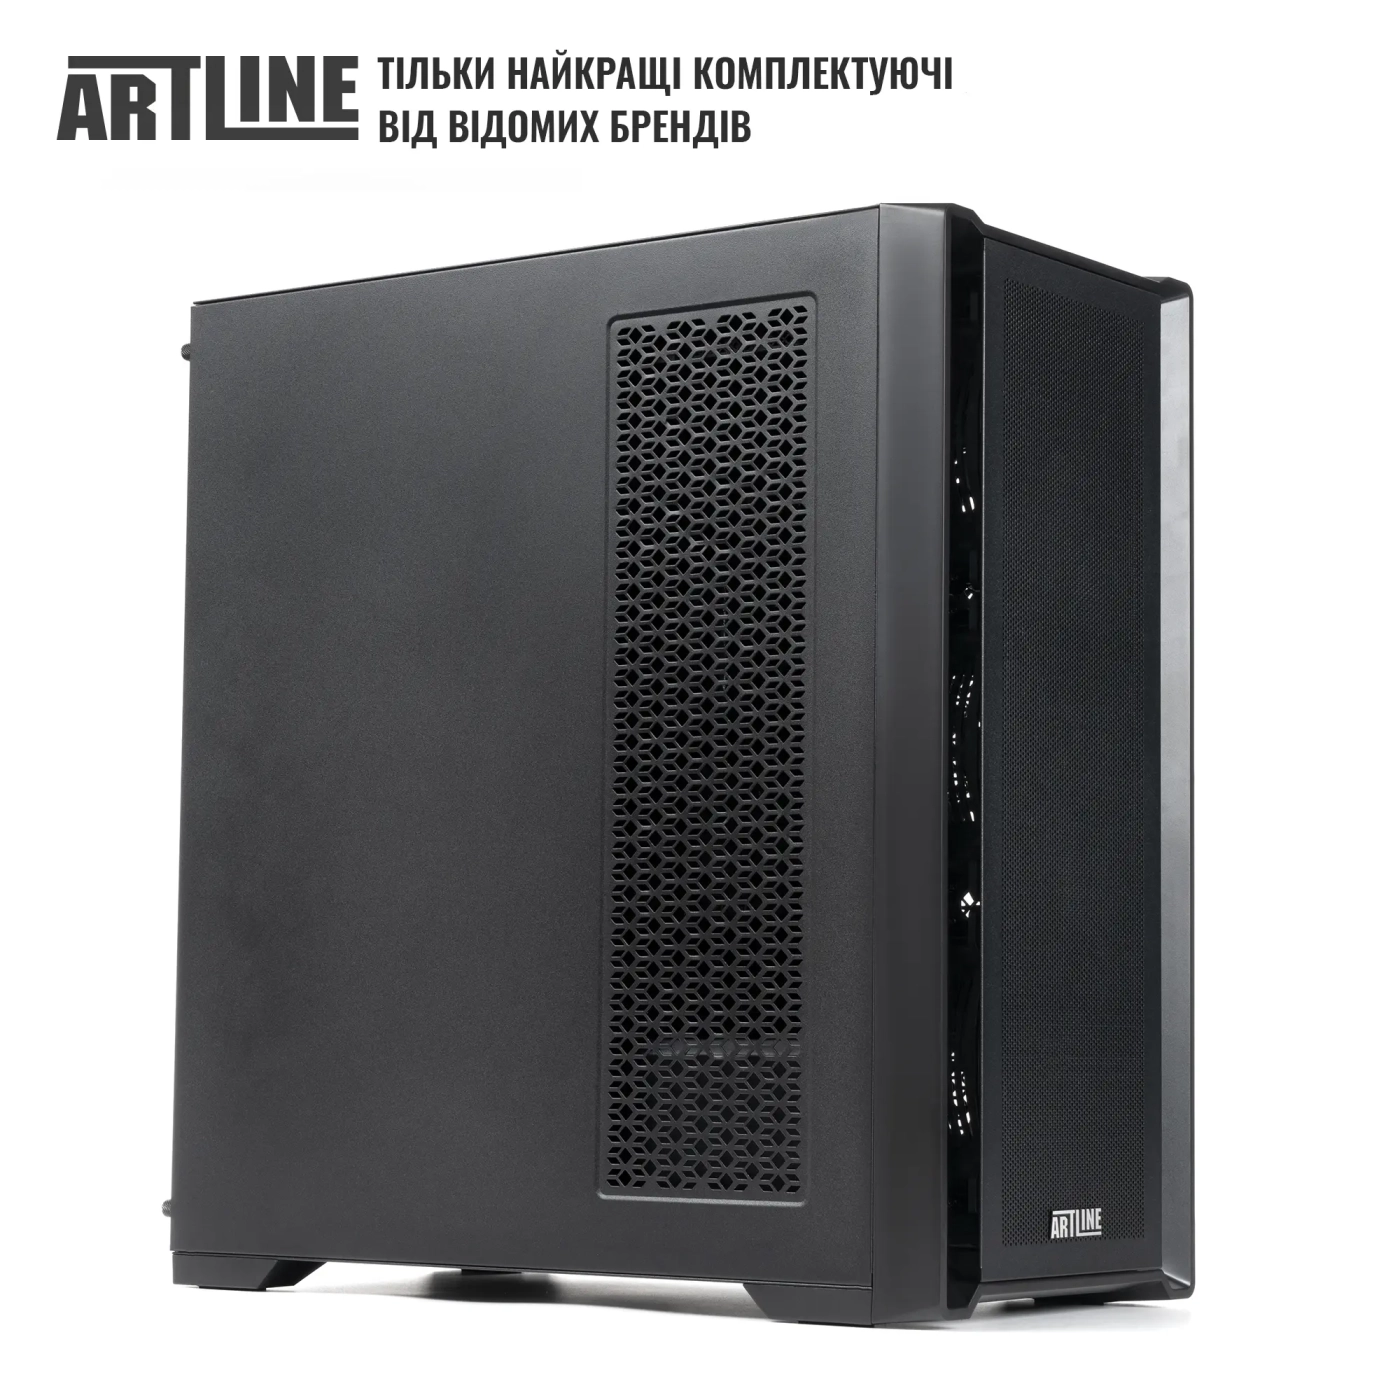 Купить Сервер ARTLINE Business T81 (T81v15) - фото 6